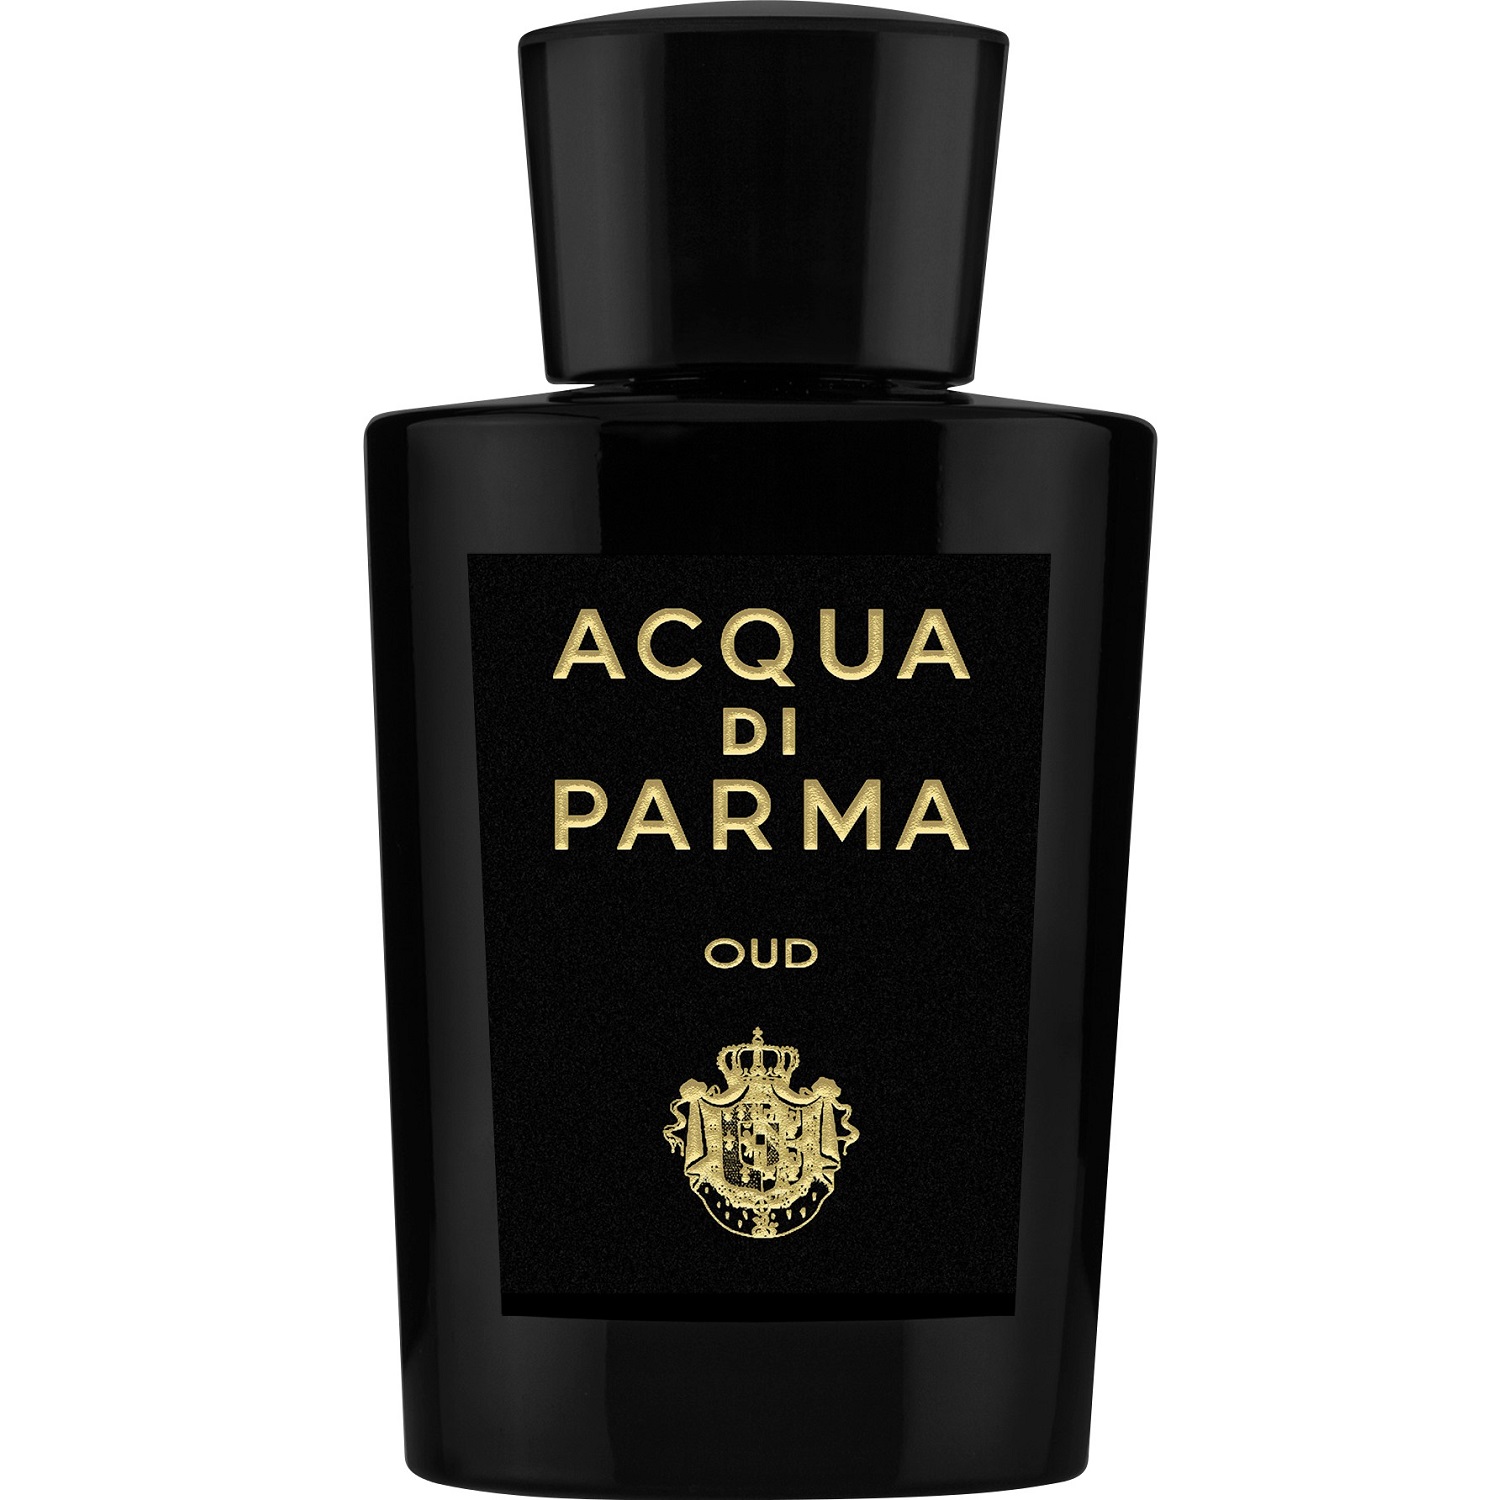 Acqua di Parma - Oud Eau de Parfum (5мл)